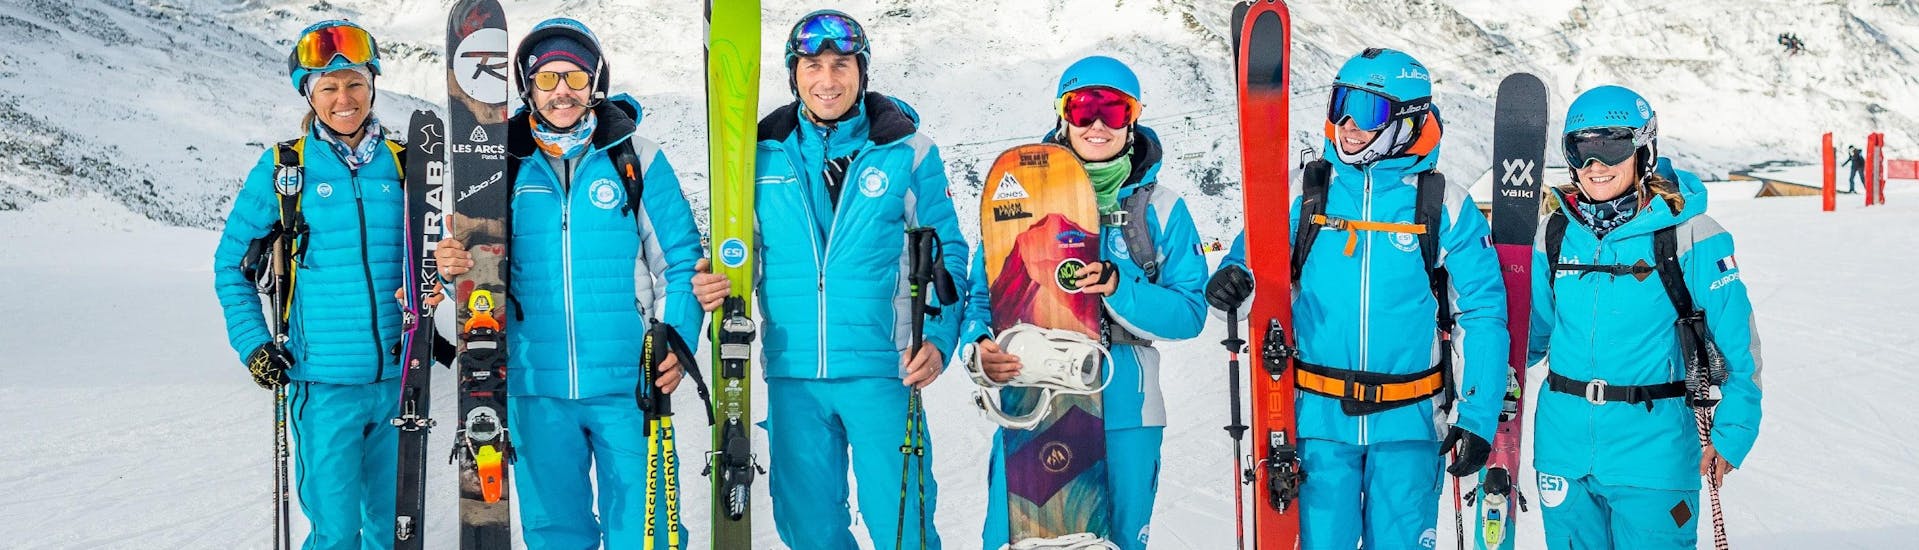 Des moniteurs de l'école de ski ESI Alpe d'Huez - European Ski School s'apprêtent à accueillir les participants au Cours particulier de snowboard.